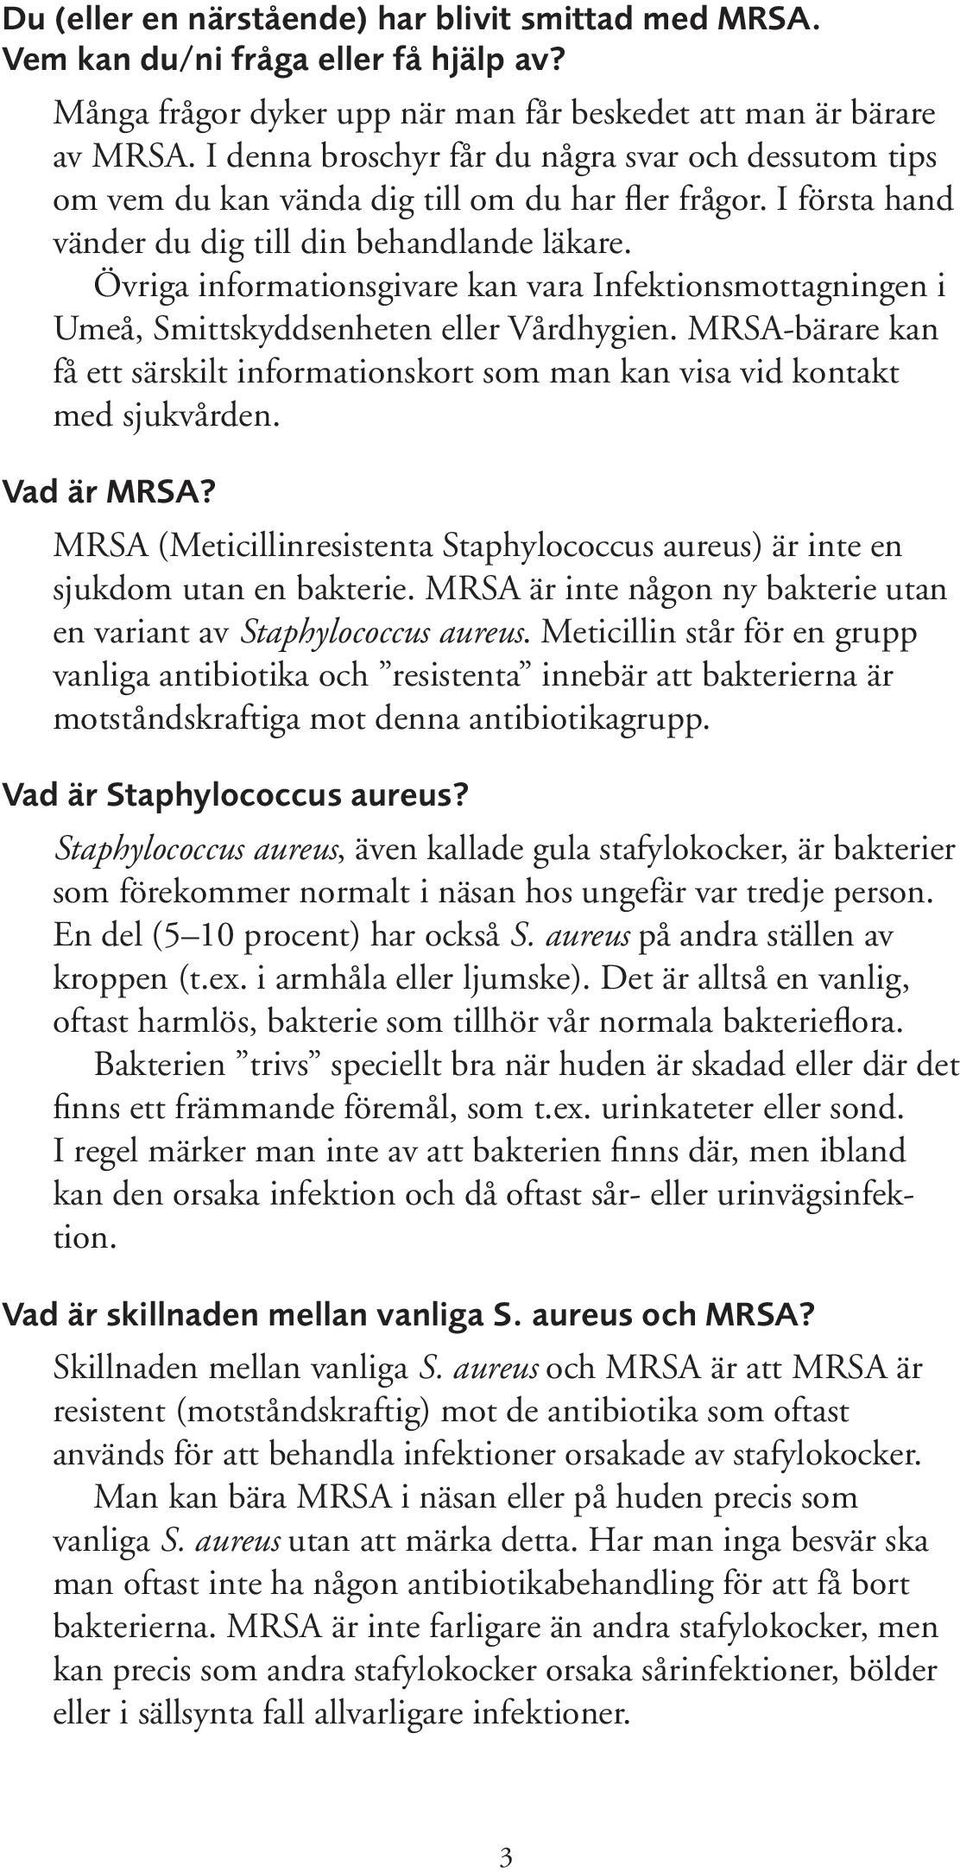 Övriga informationsgivare kan vara Infektionsmottagningen i Umeå, Smittskyddsenheten eller Vårdhygien. MRSA-bärare kan få ett särskilt informationskort som man kan visa vid kontakt med sjukvården.